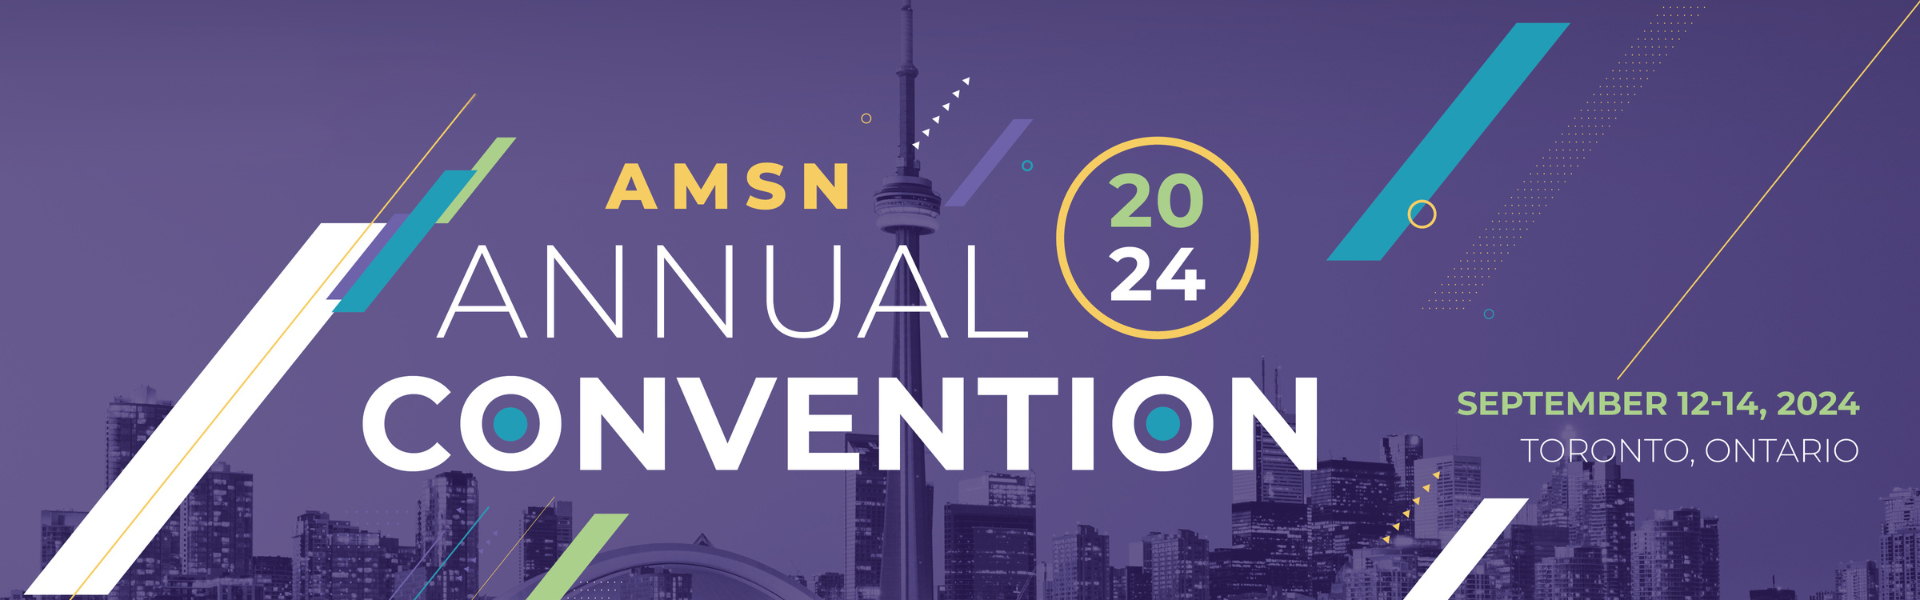 AMSN Annual Convention 2024